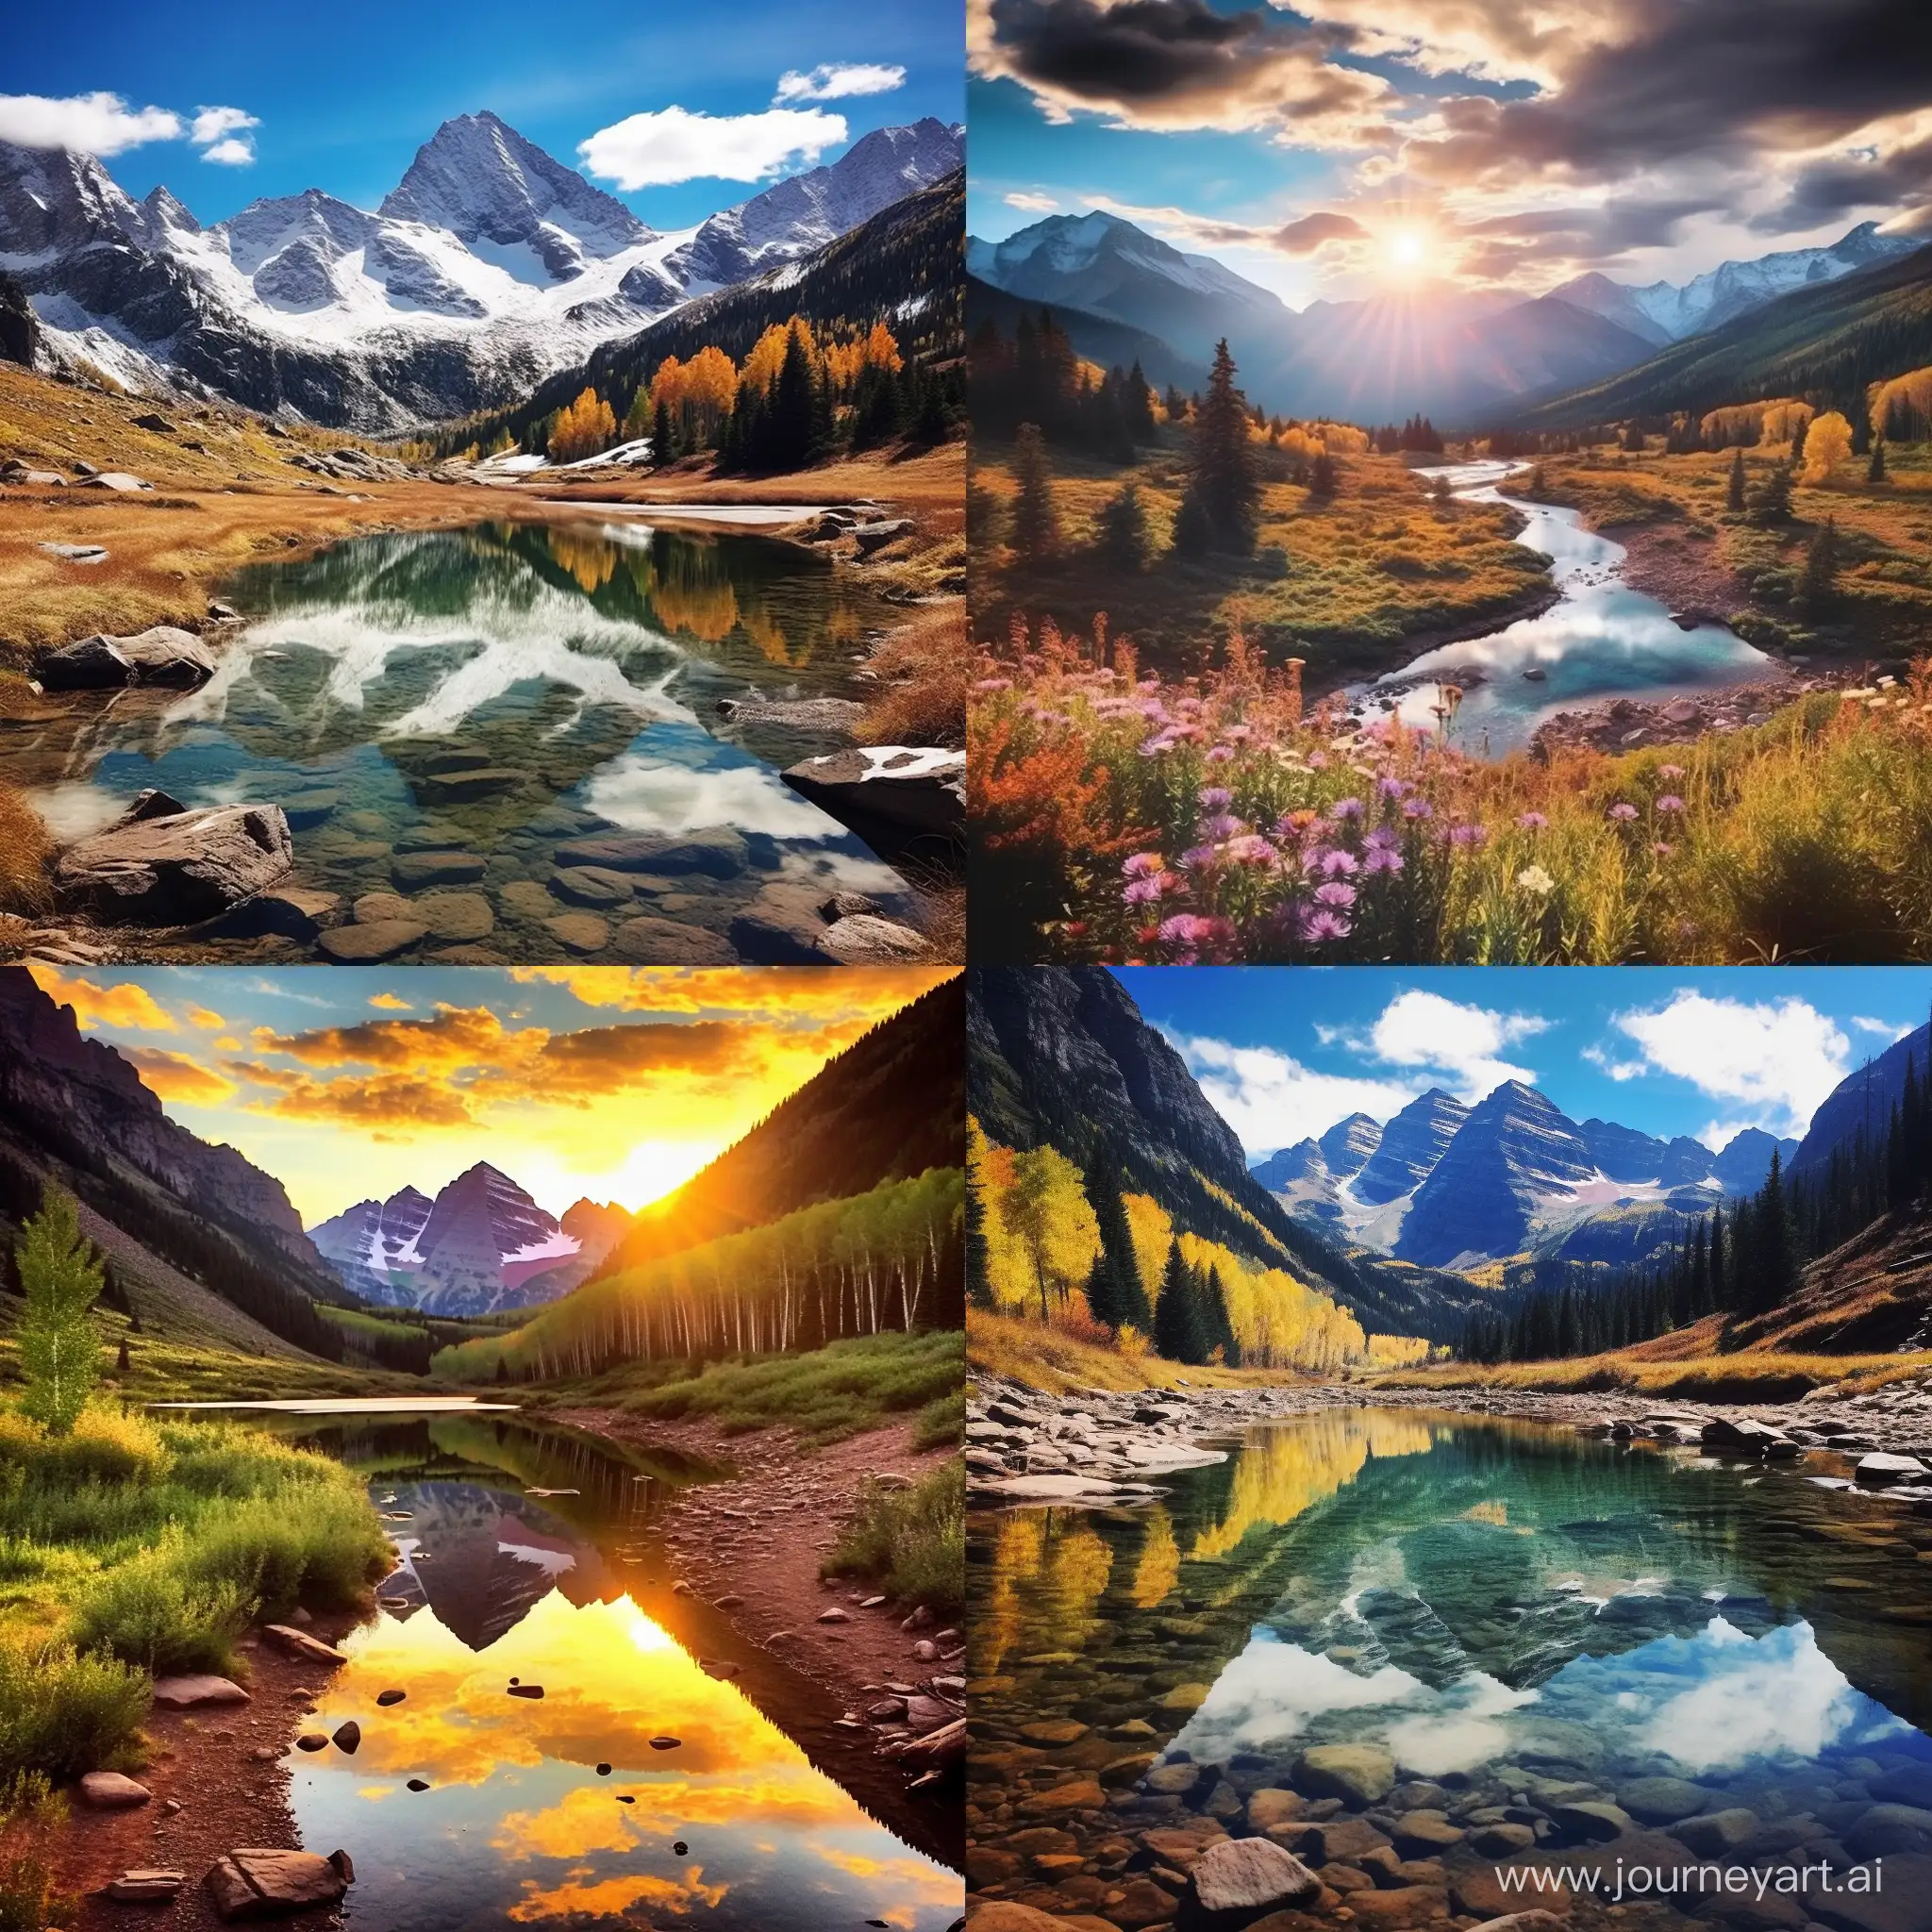 Scenic-Colorado-Landscape-in-Perfect-Proportions